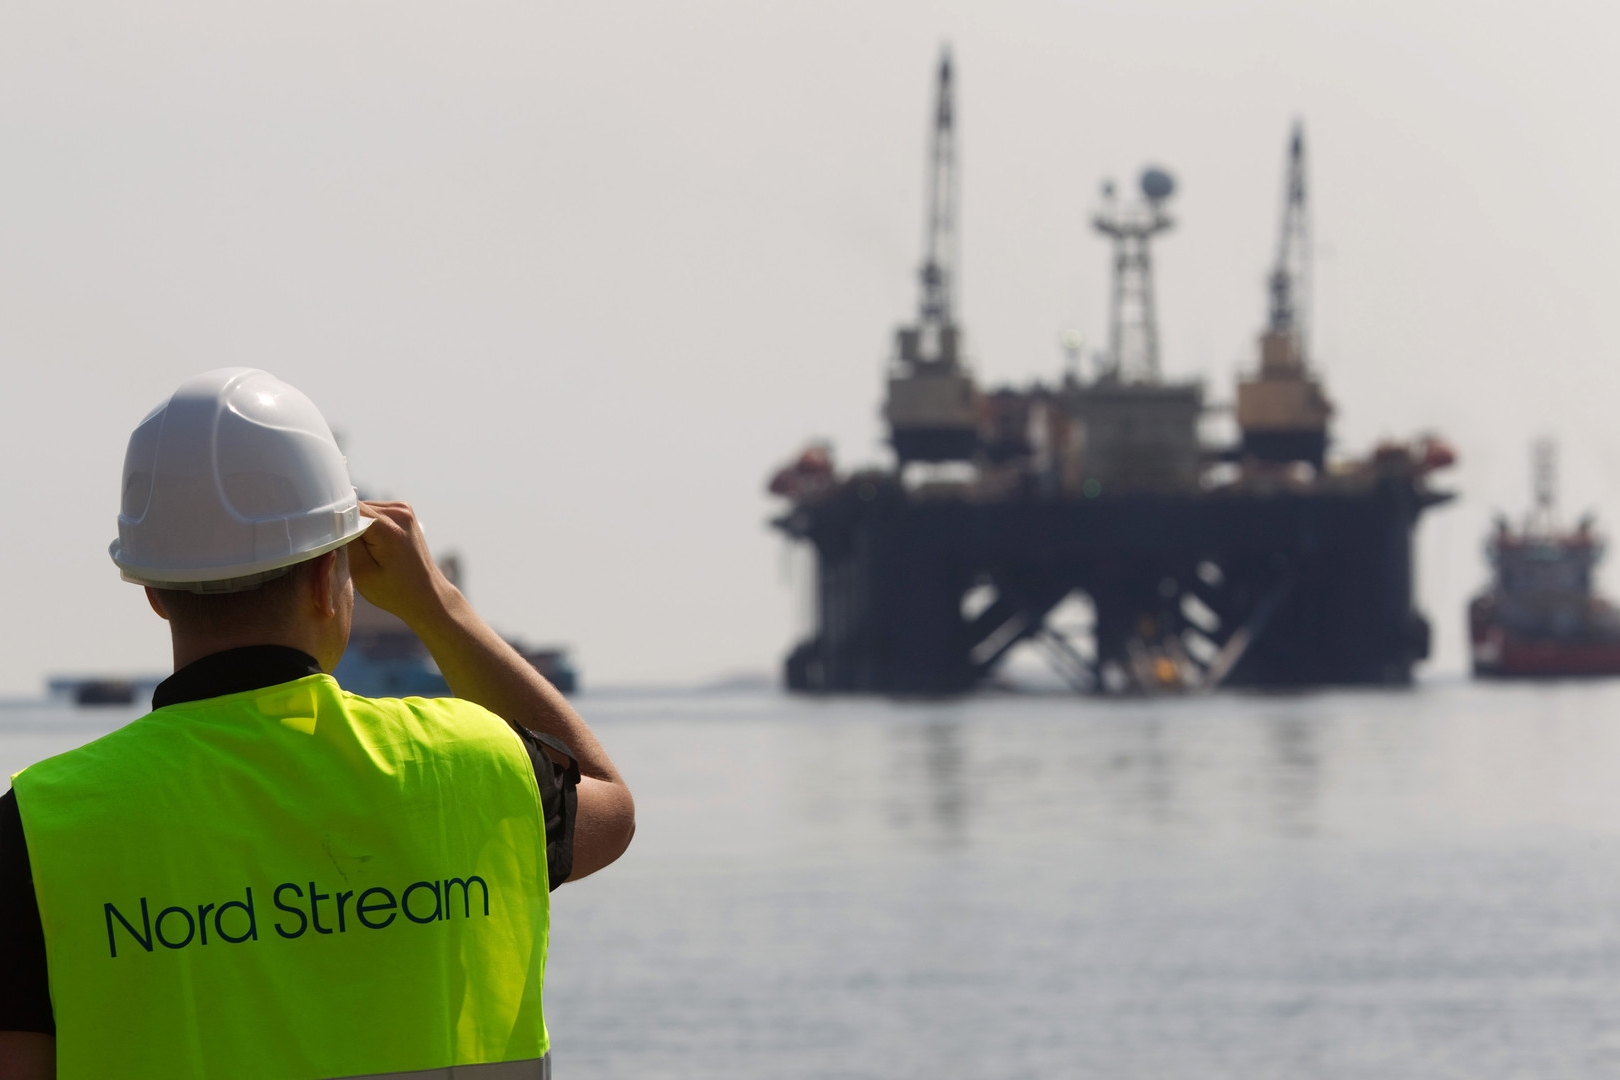 Газпром выдаст без конкурса подряды еще на 91 млрд руб. на подвод к Nord Stream 2